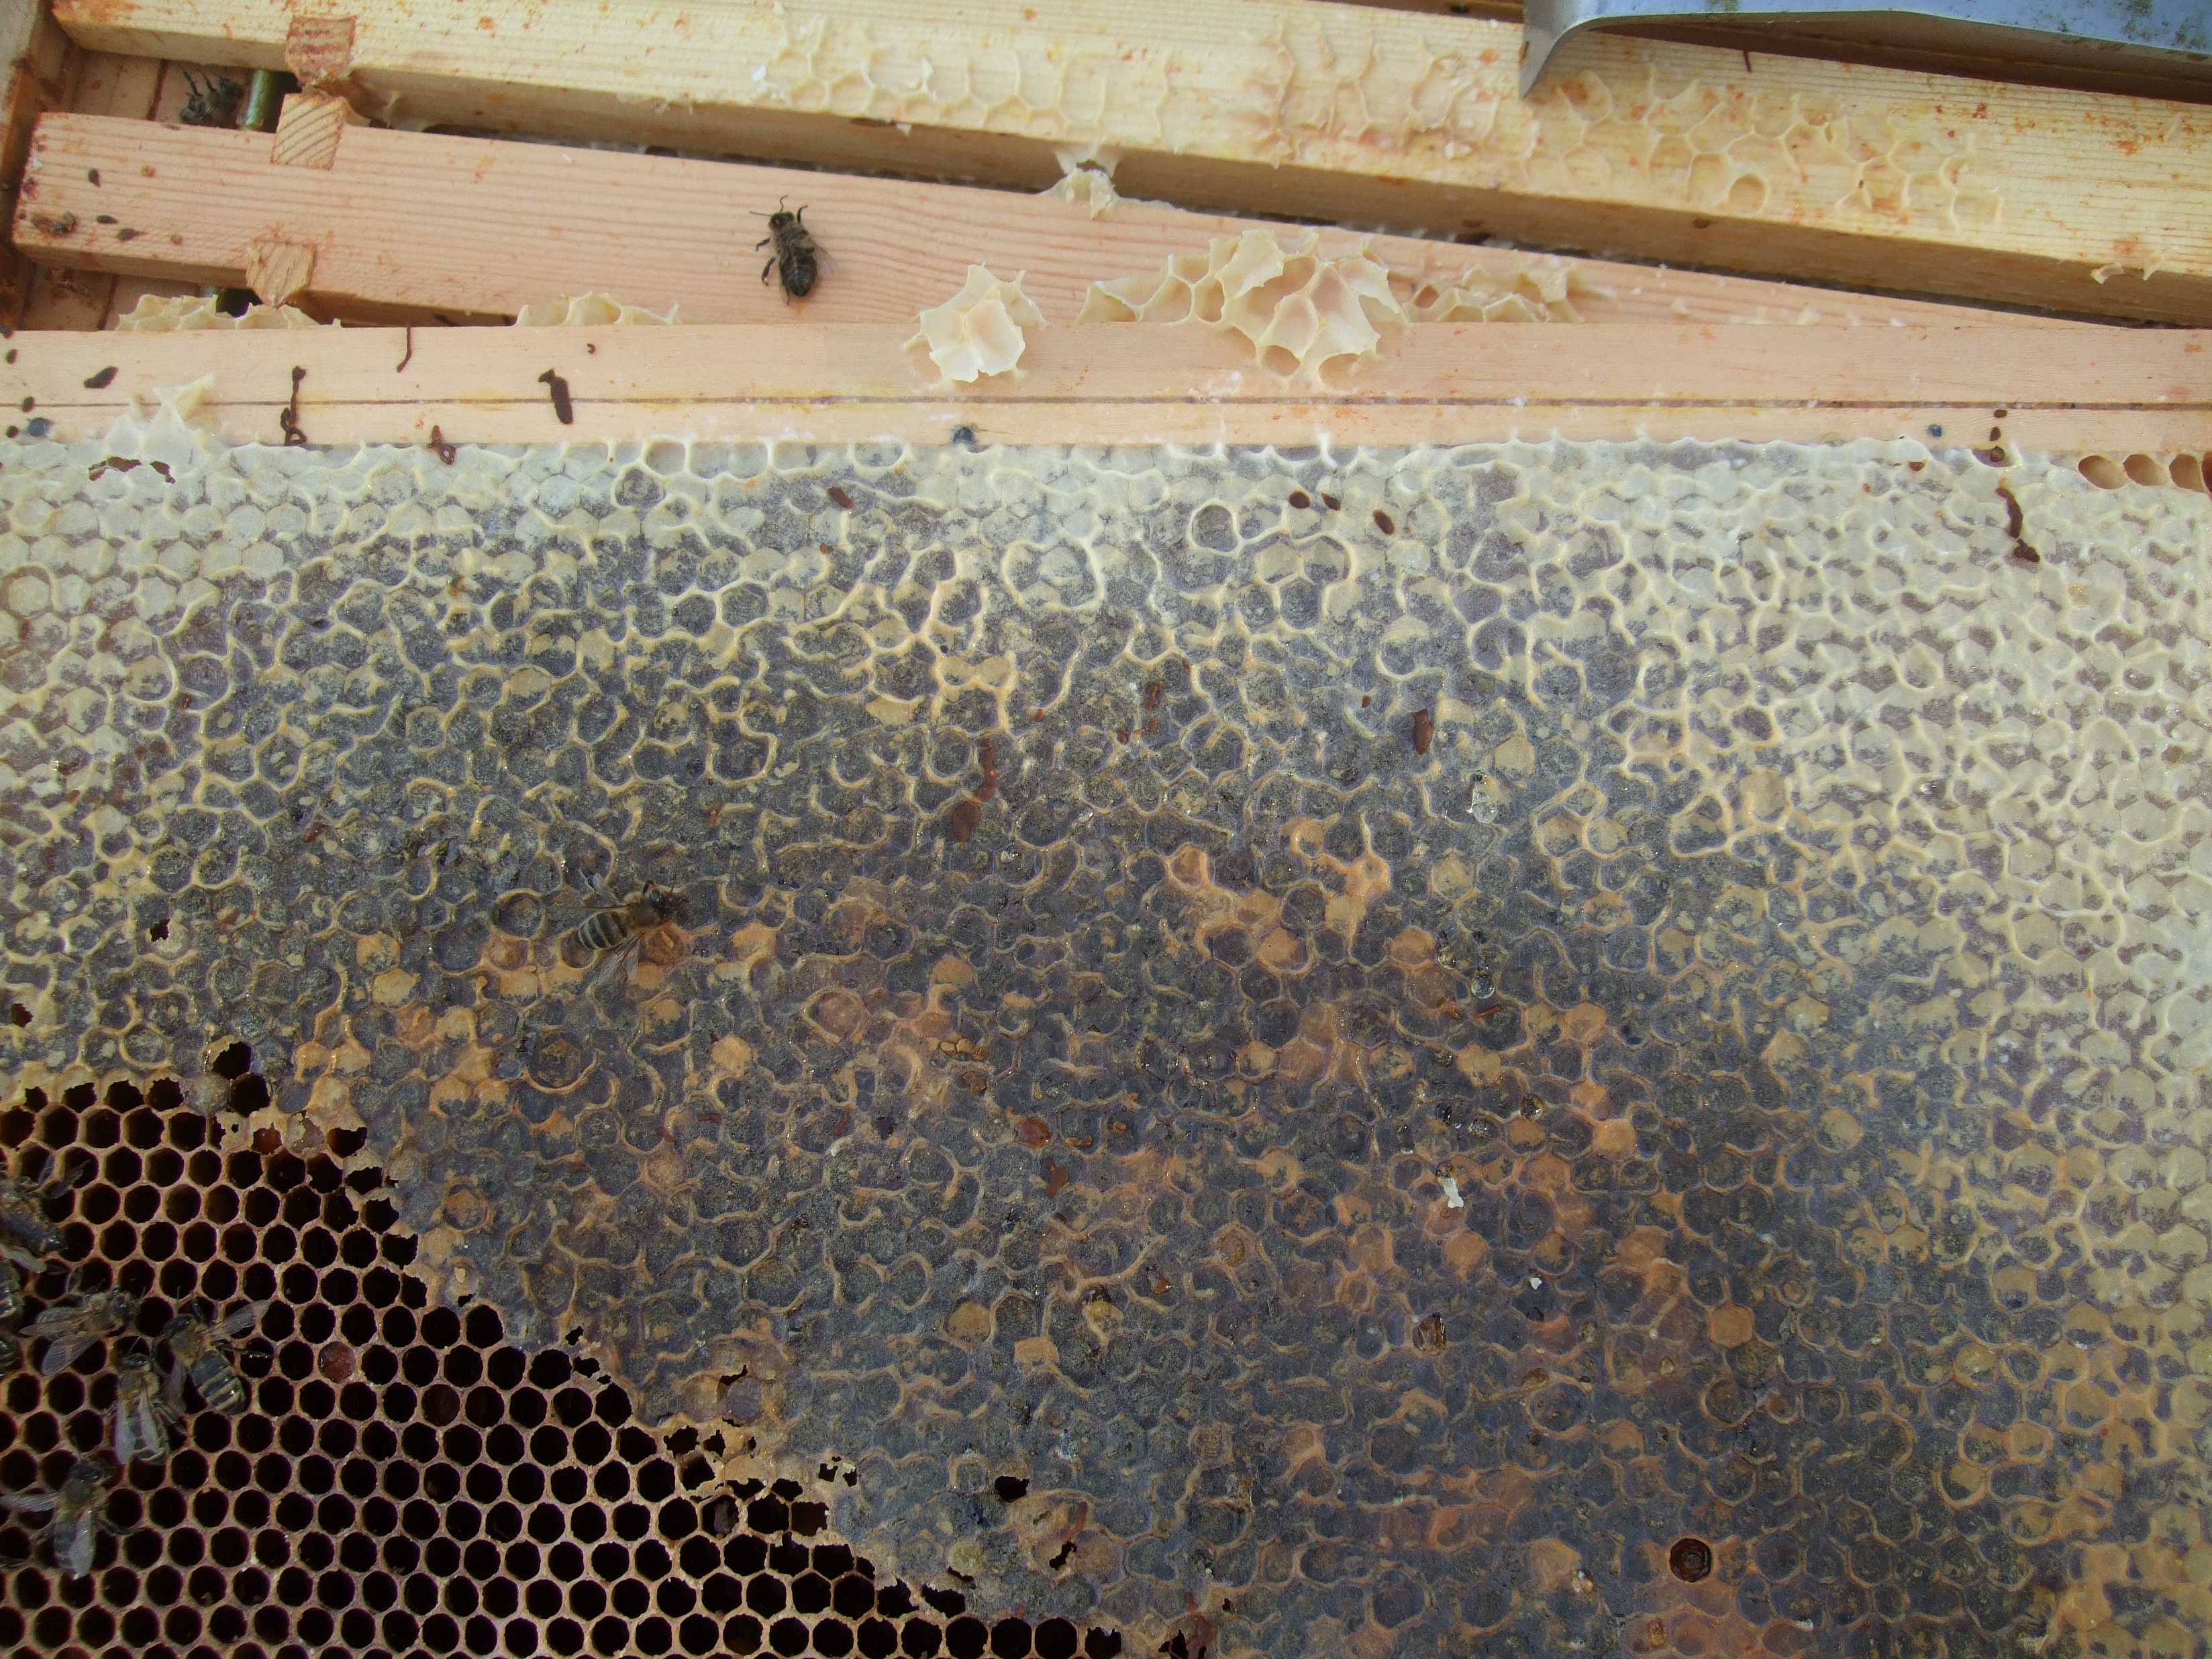 О нозематозе пчел: что это такое, симптомы и лечение, профилактика осенью